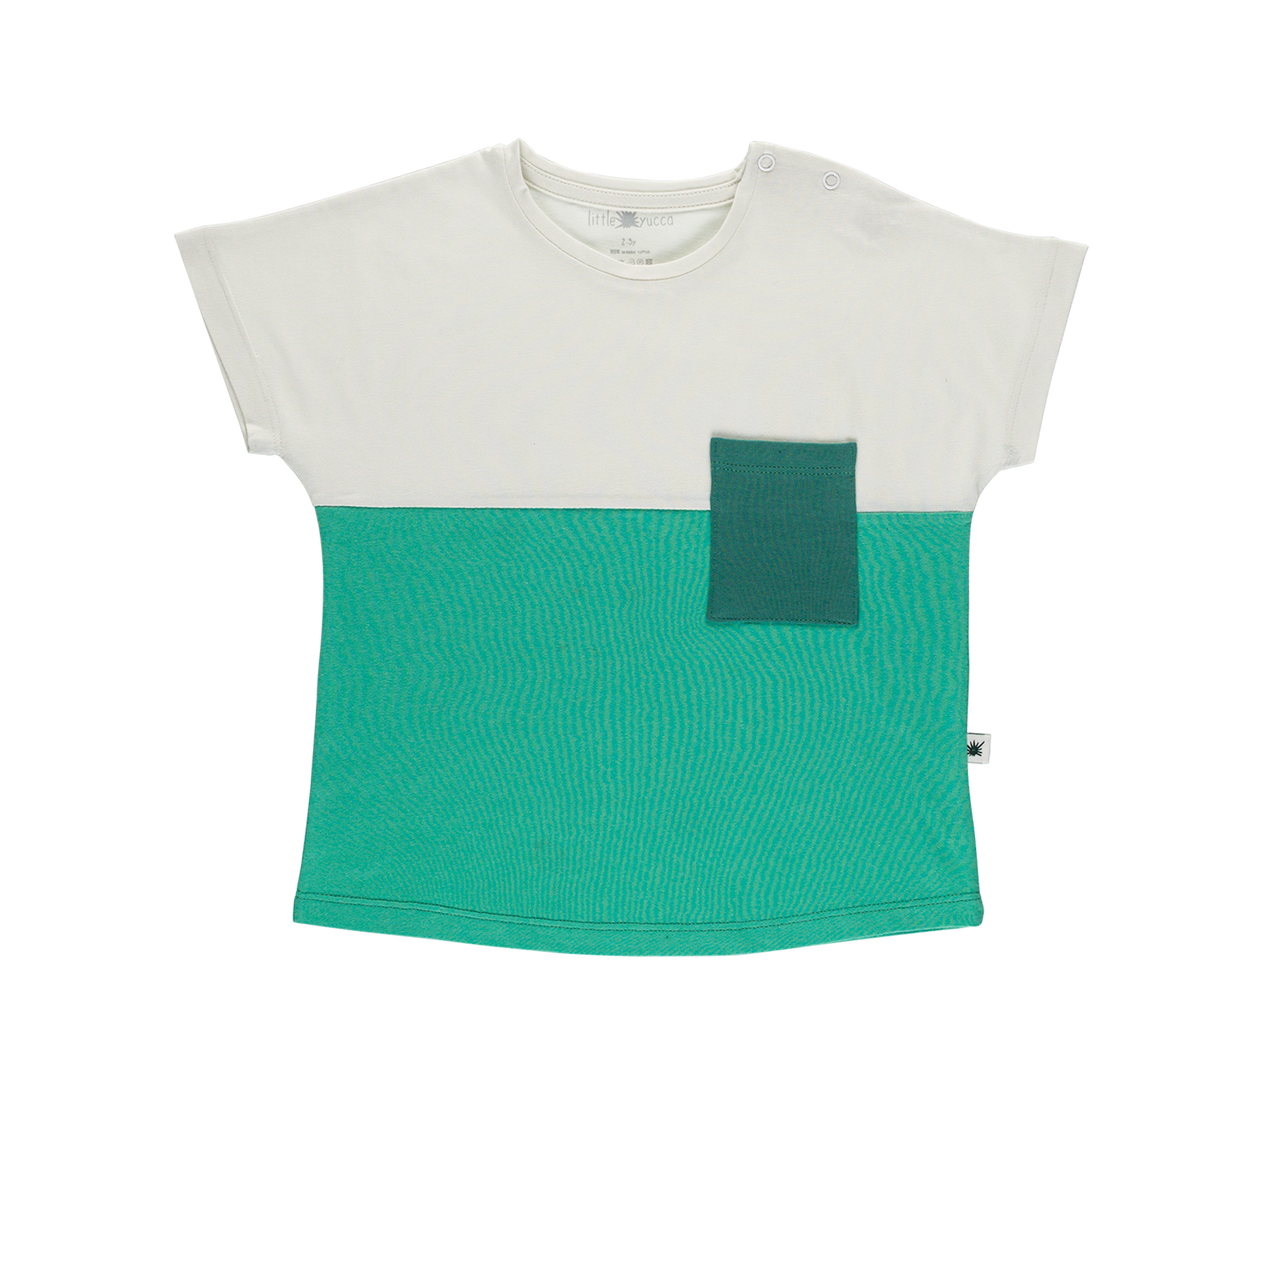 "Pocket" Tshirt - Green